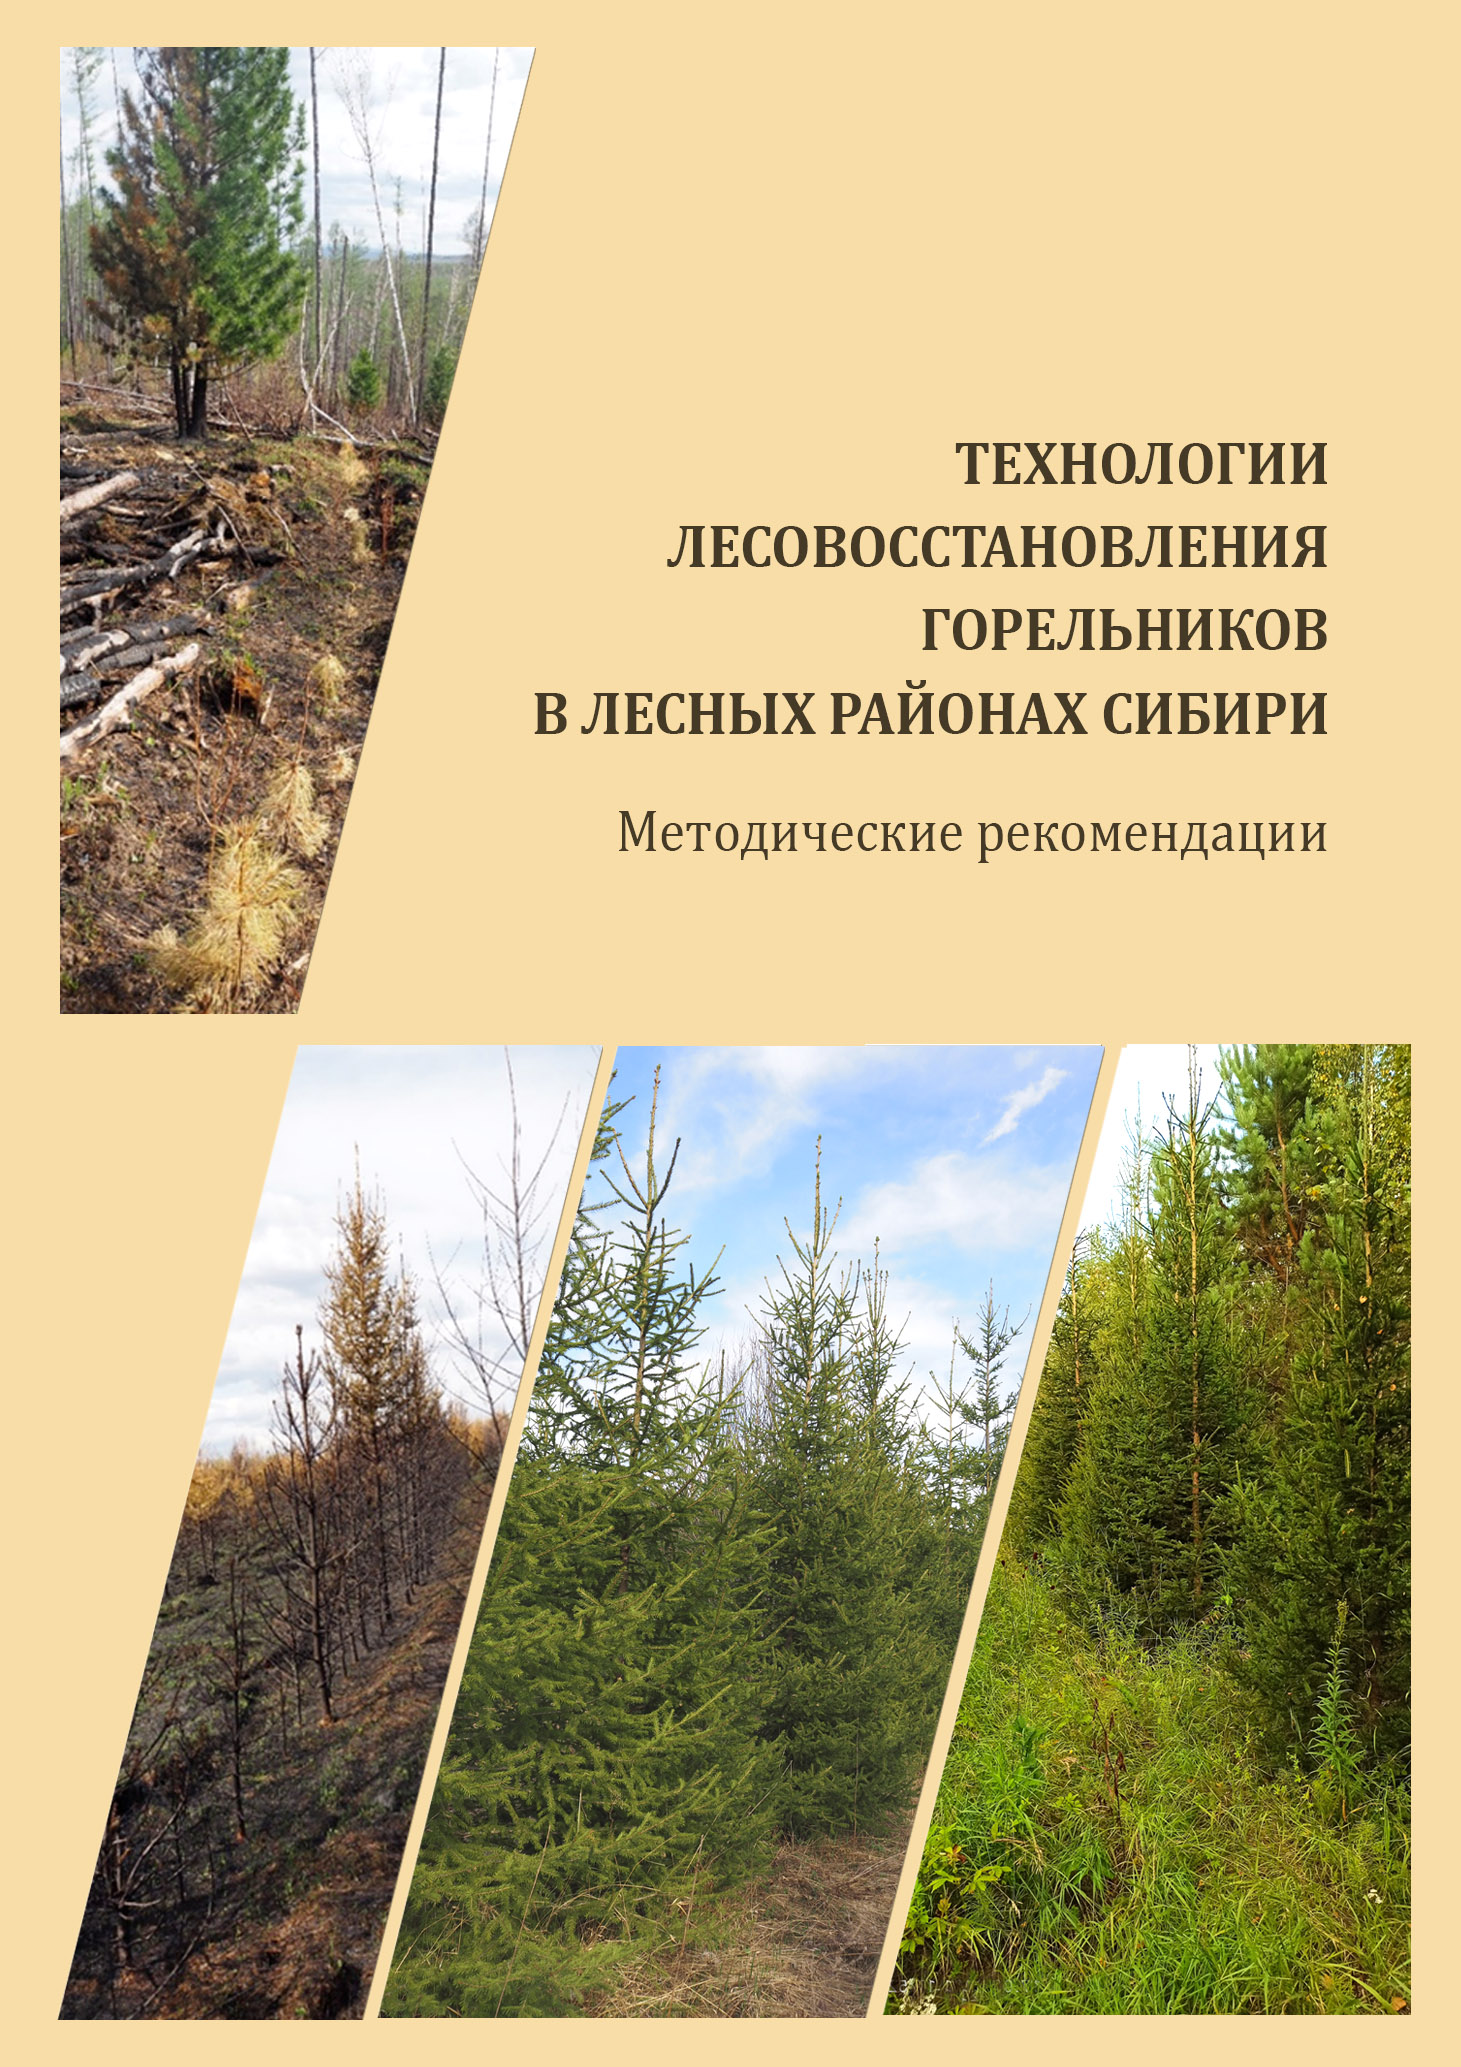 Технологии лесовосстановления горельников в лесных районах Сибири